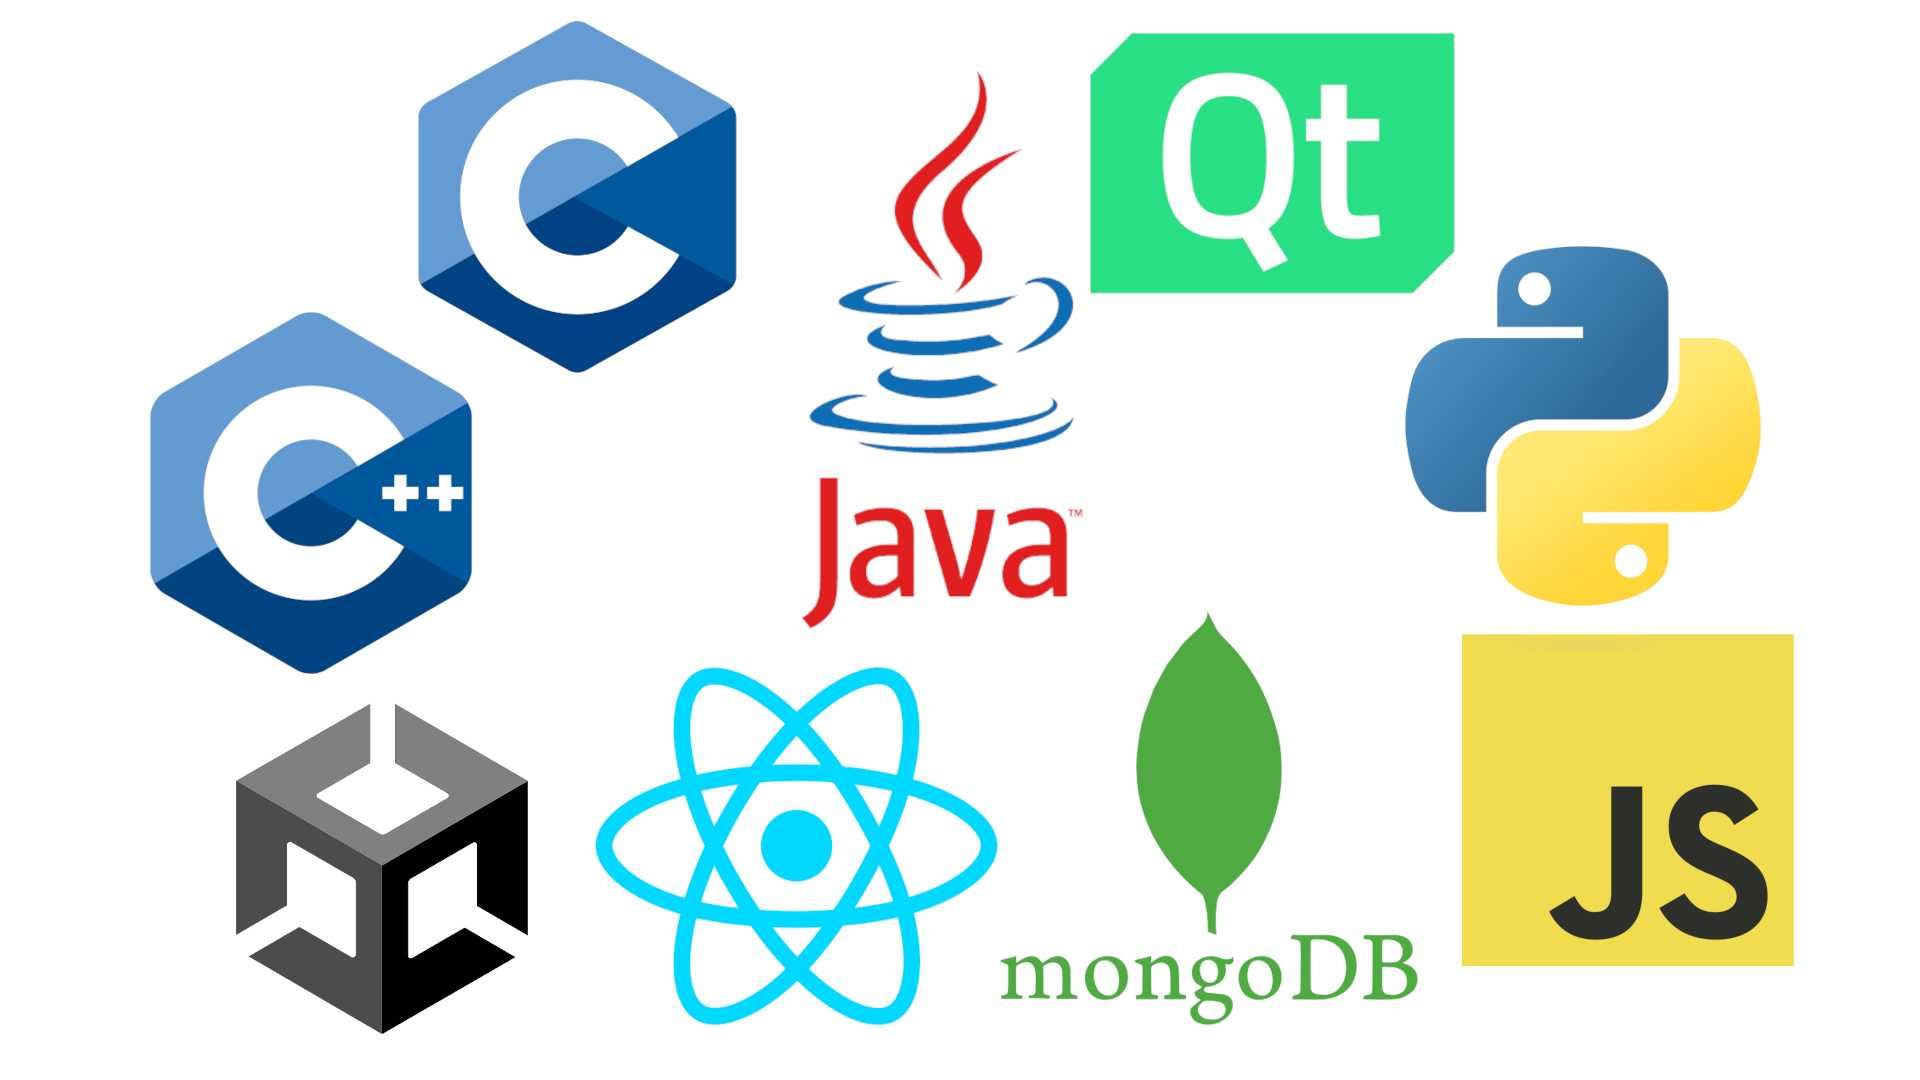 Auxilio em projetos de programção: C, C++, Java, Python...